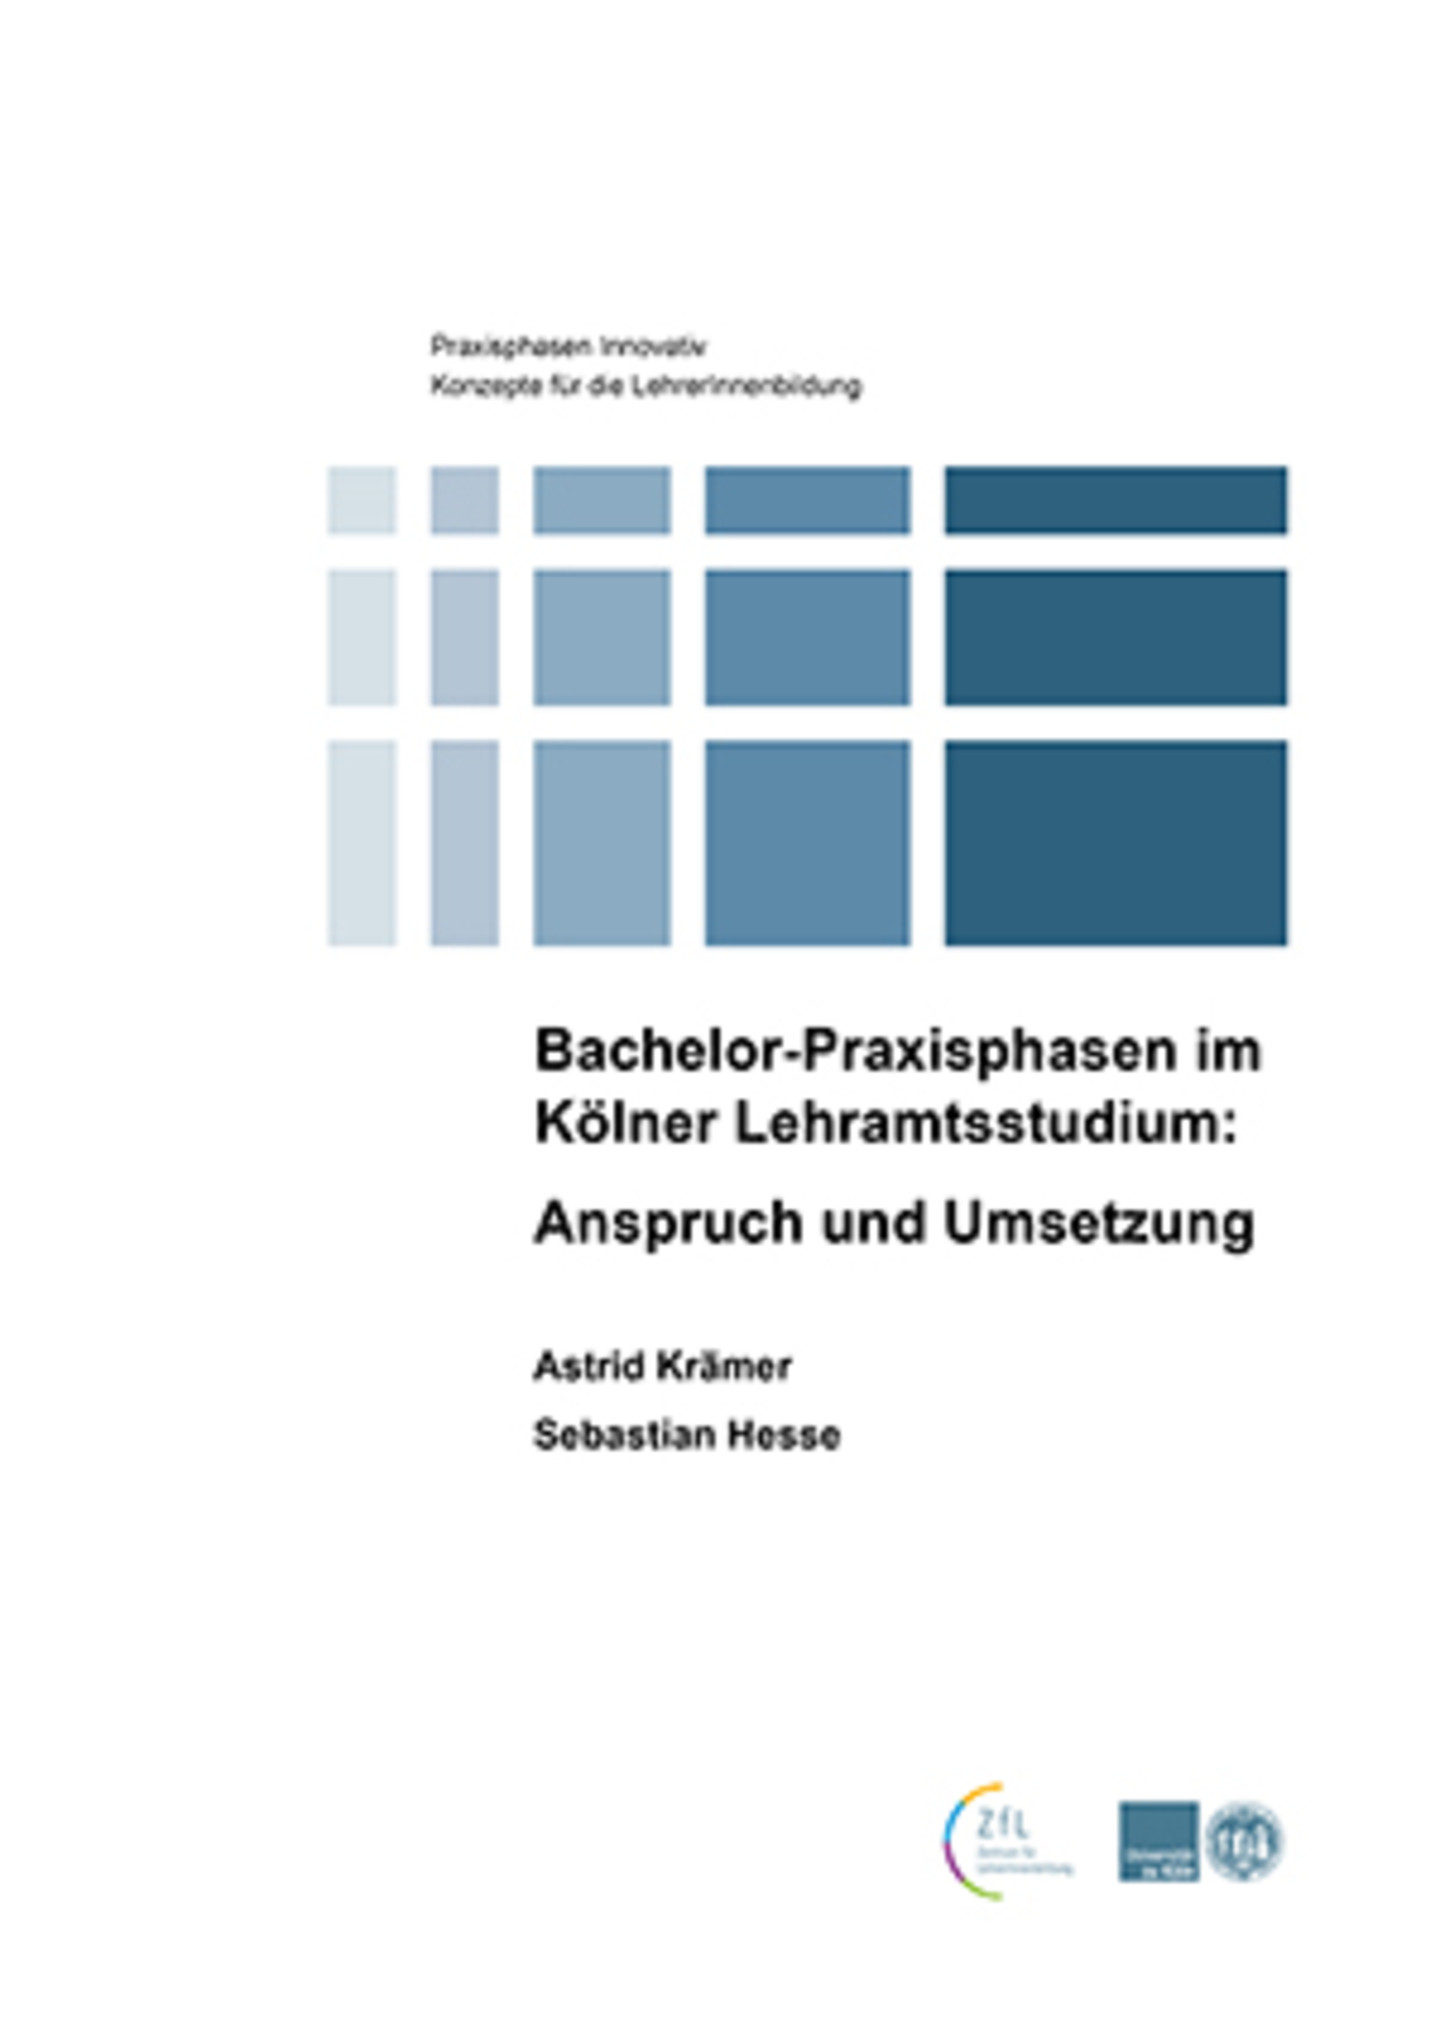 Bachelor-Praxisphasen im Kölner Lehramtsstudium: Anspruch und Umsetzung